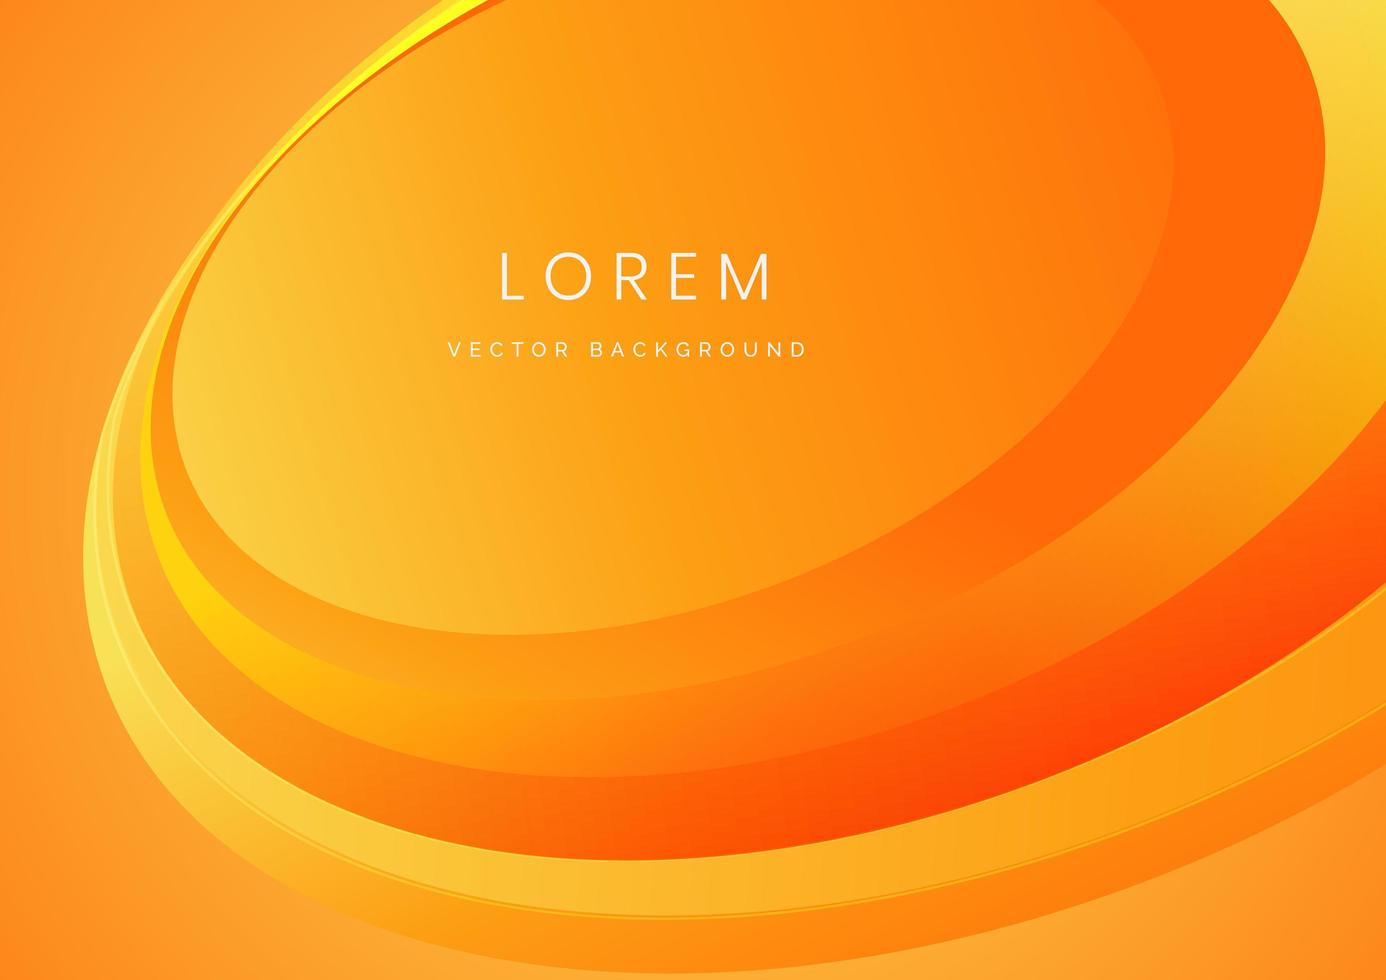 abstracte moderne oranje kleurovergang golven overlappen achtergrond met kopie ruimte voor tekst. minimaal begrip. vector